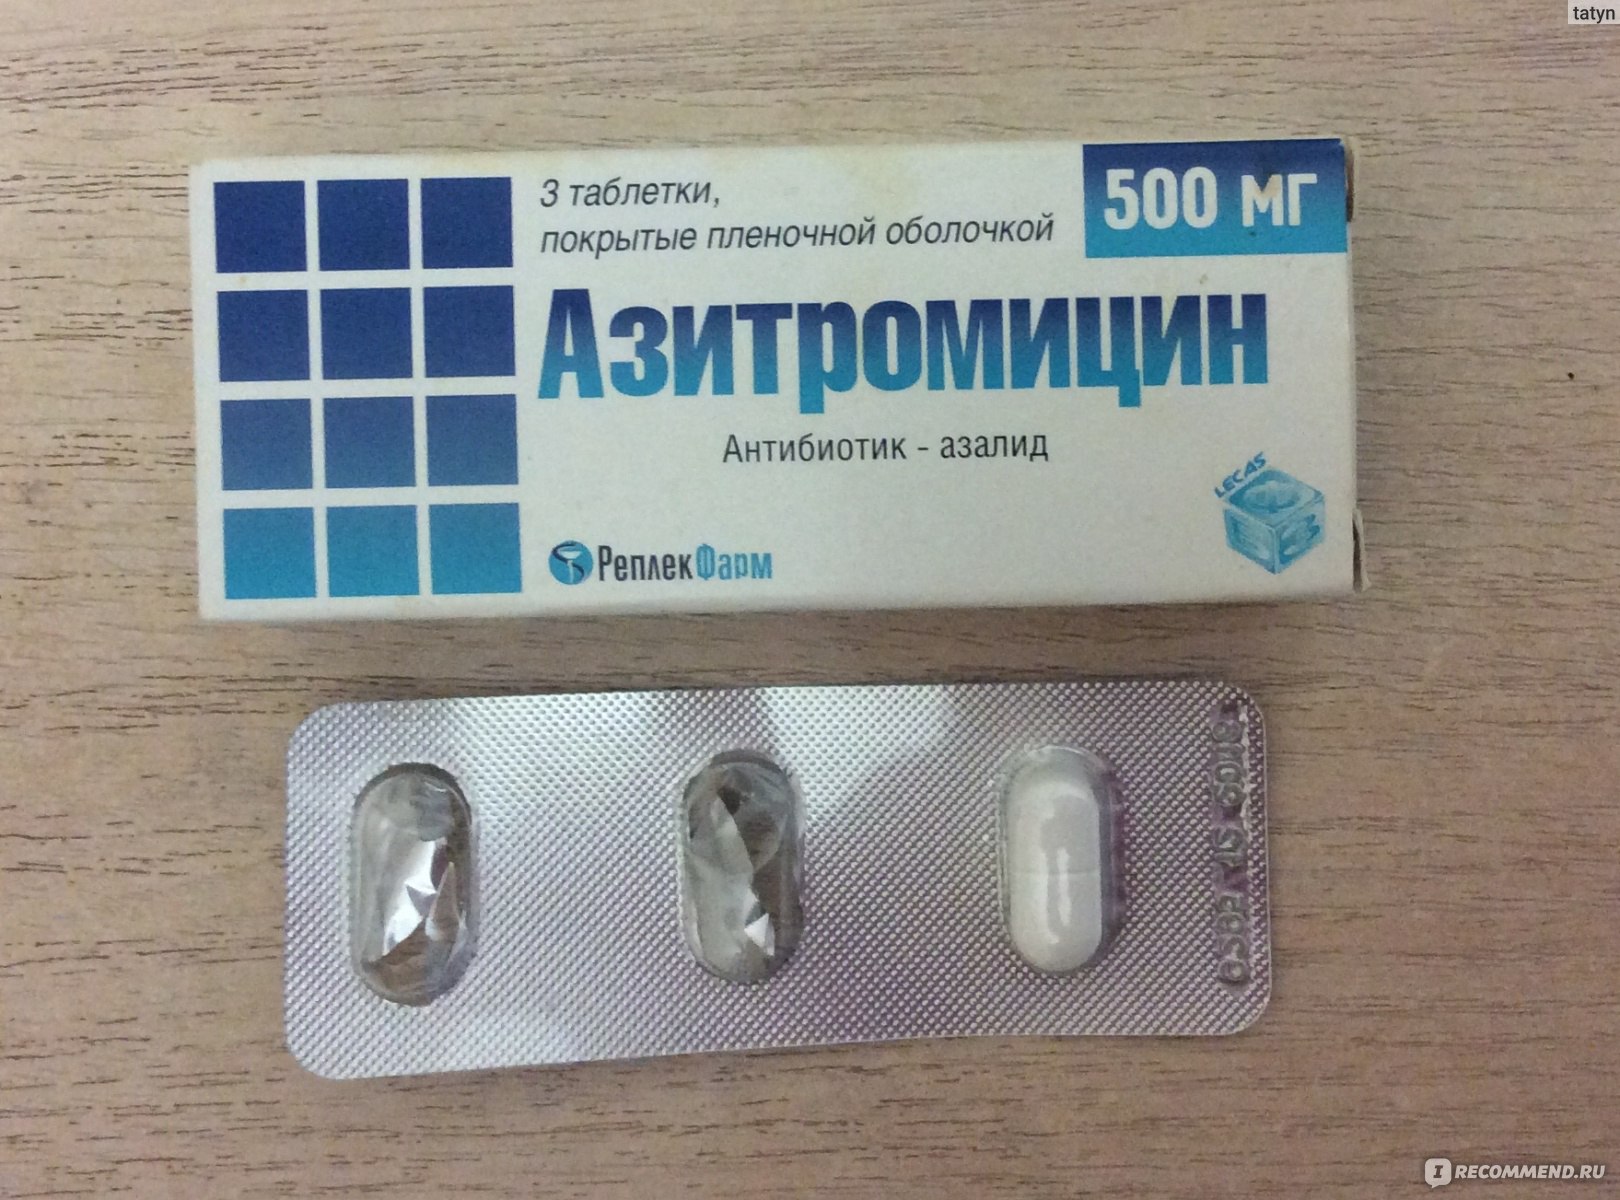 Какой антибиотик при кашле у взрослых. Антибиотик Азитромицин 500 мг. Антибиотик 3 таблетки в упаковке Азитромицин. Антибиотик от кашля 3 таблетки название. Сильный антибиотик от простуды 3 таблетки.